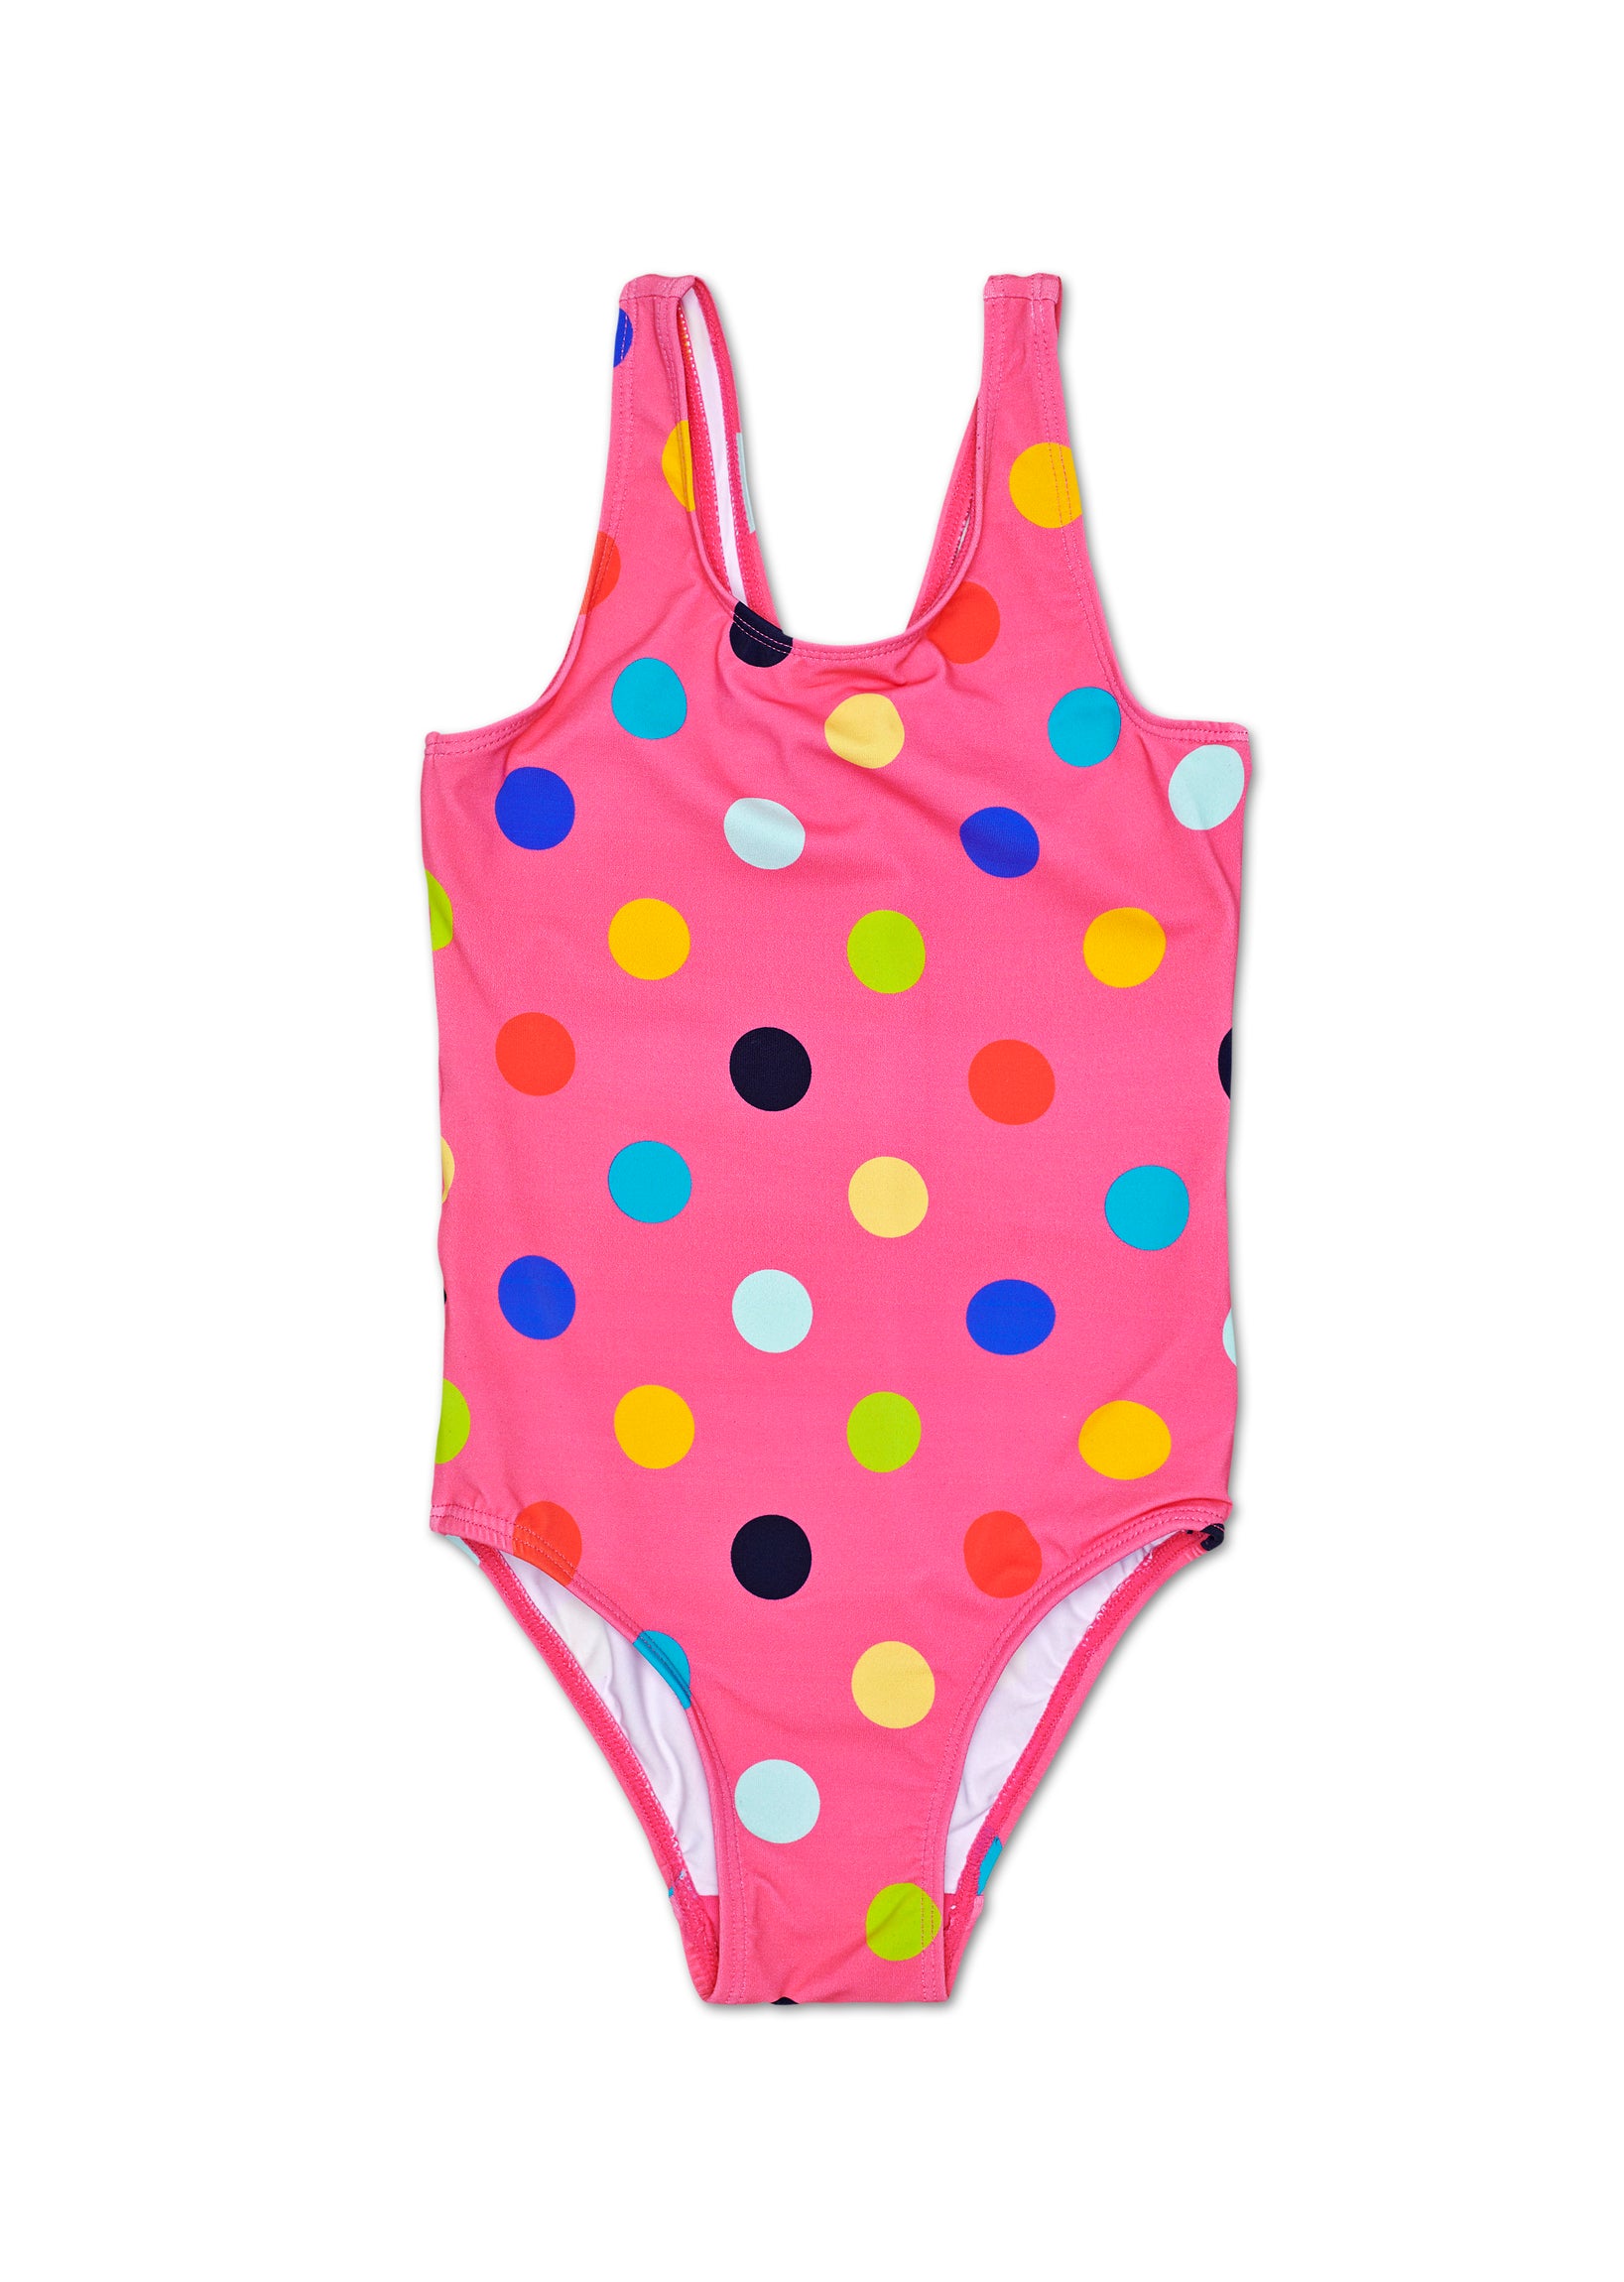 Dětské růžové plavky Happy Socks s puntíky, vzor Big Dot